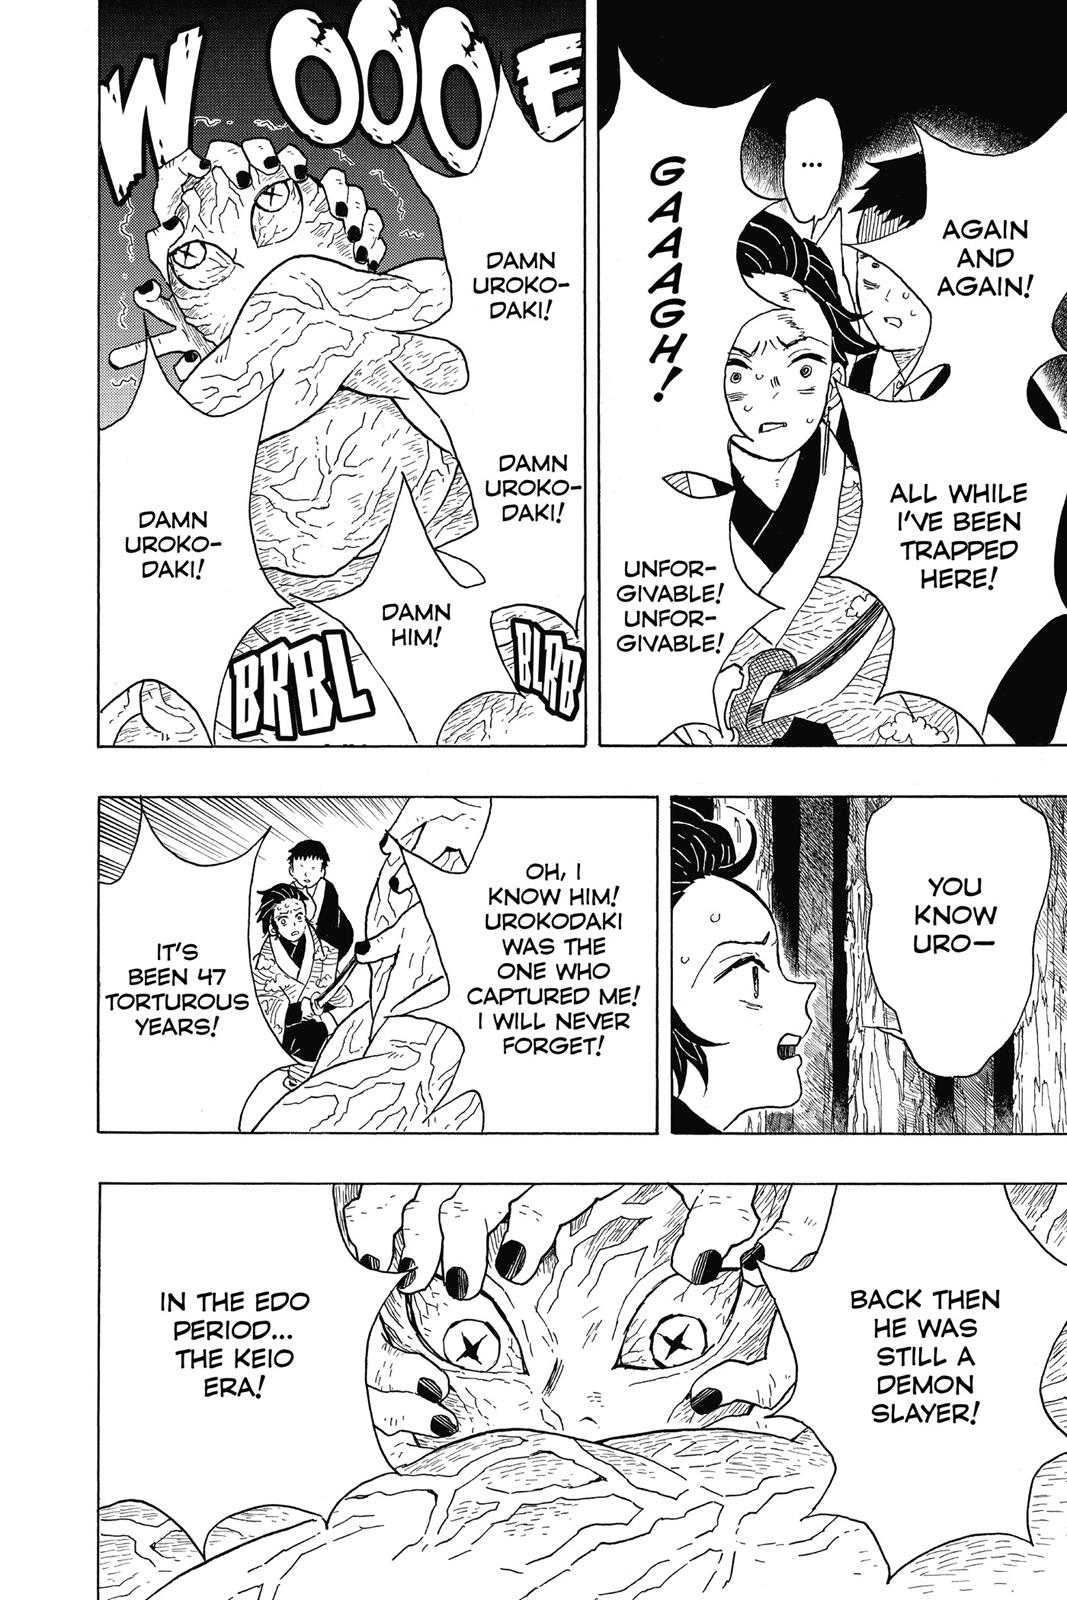 Demon Slayer Manga Manga Chapter - 7 - image 4